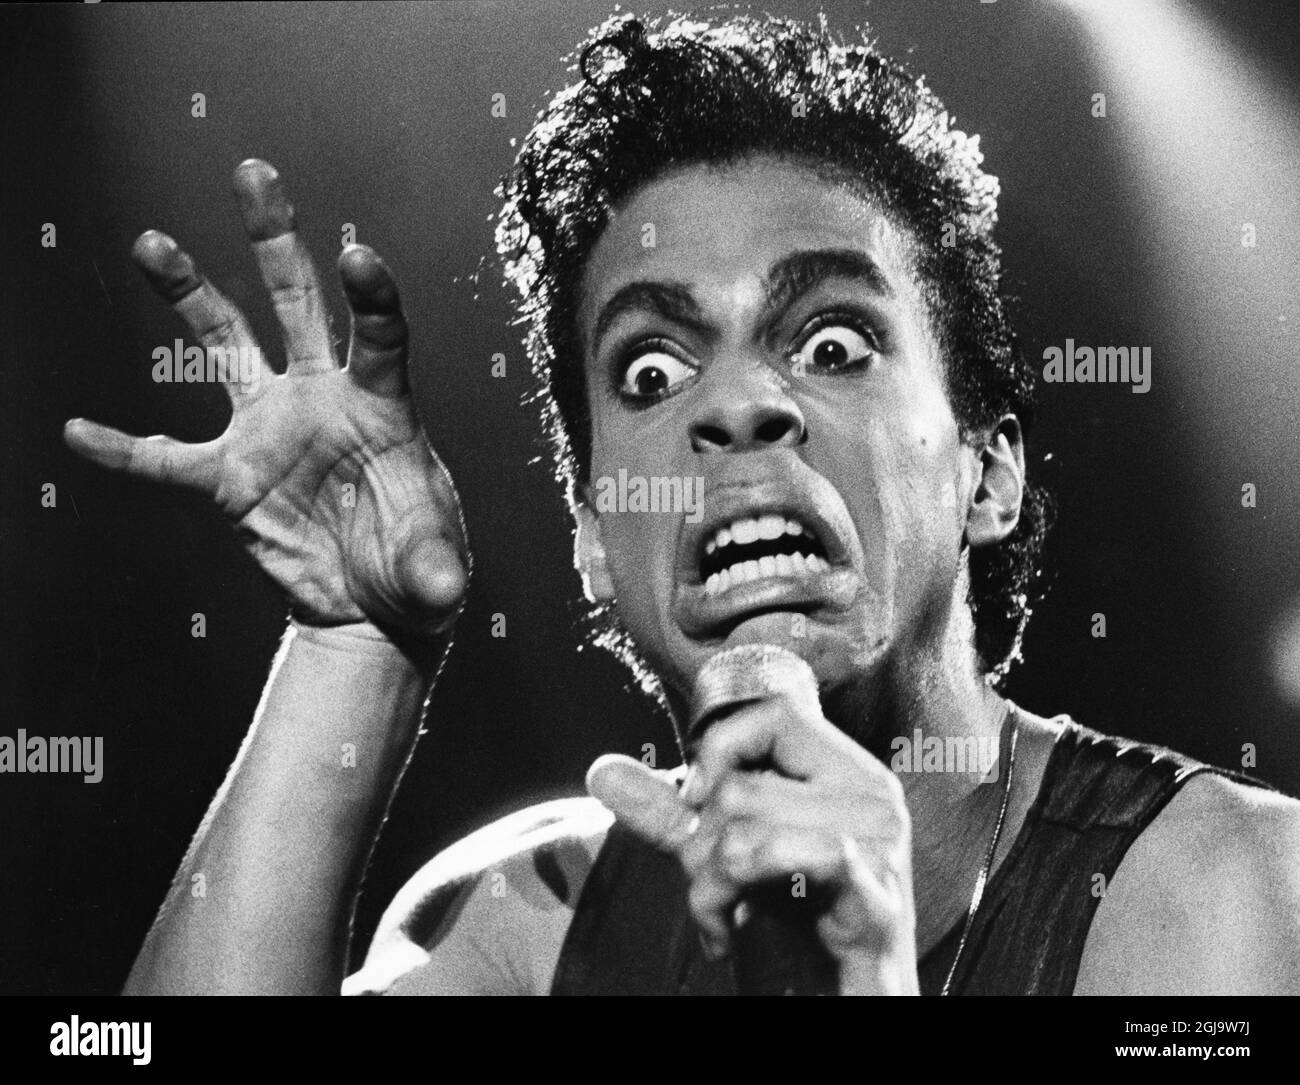 DOSSIER CA 1986 artiste, musicien et chanteur américain Prince lors d'un concert à Copenhague. Selon les médias, Prince est décédé le 21 avril 2016 à sa résidence Paisley Park au Minnesota, aux États-Unis, à l'âge de 57 ans. Foto: Goran Strandberg / Skanereportage / TT / Kod: 36100 Banque D'Images